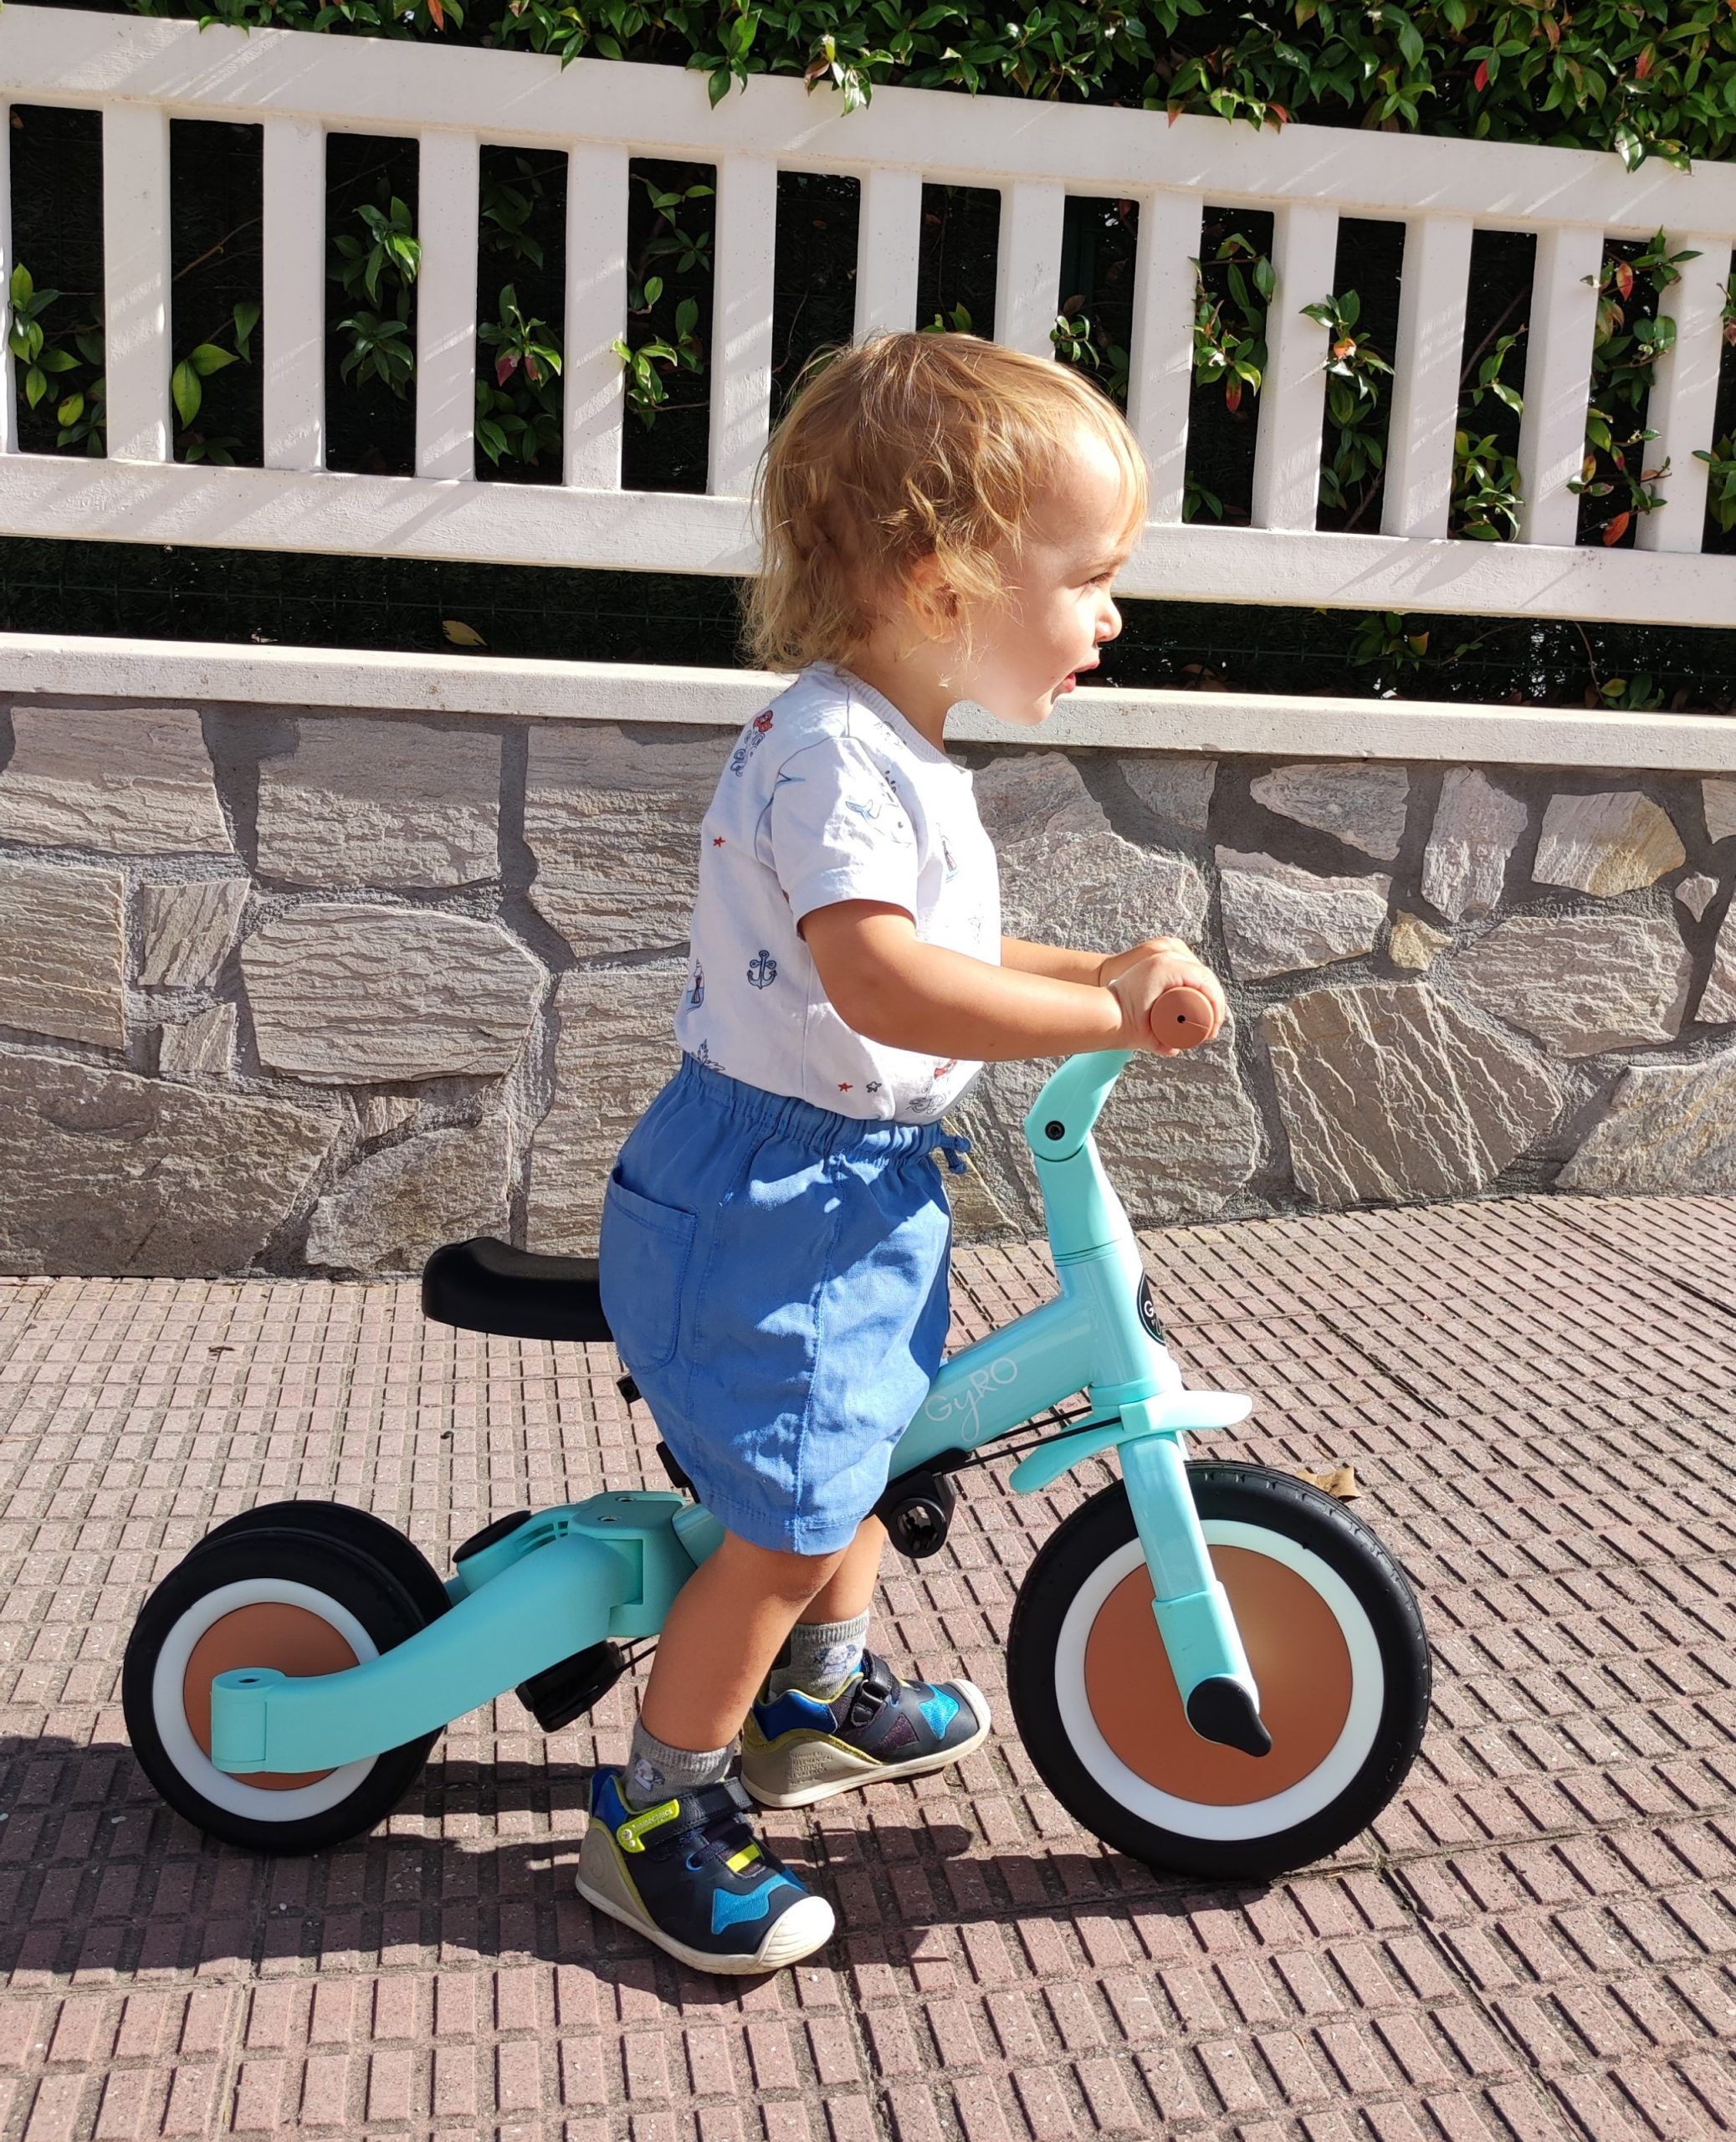 Bicicleta y triciclo sin pedales evolutivo para bebé